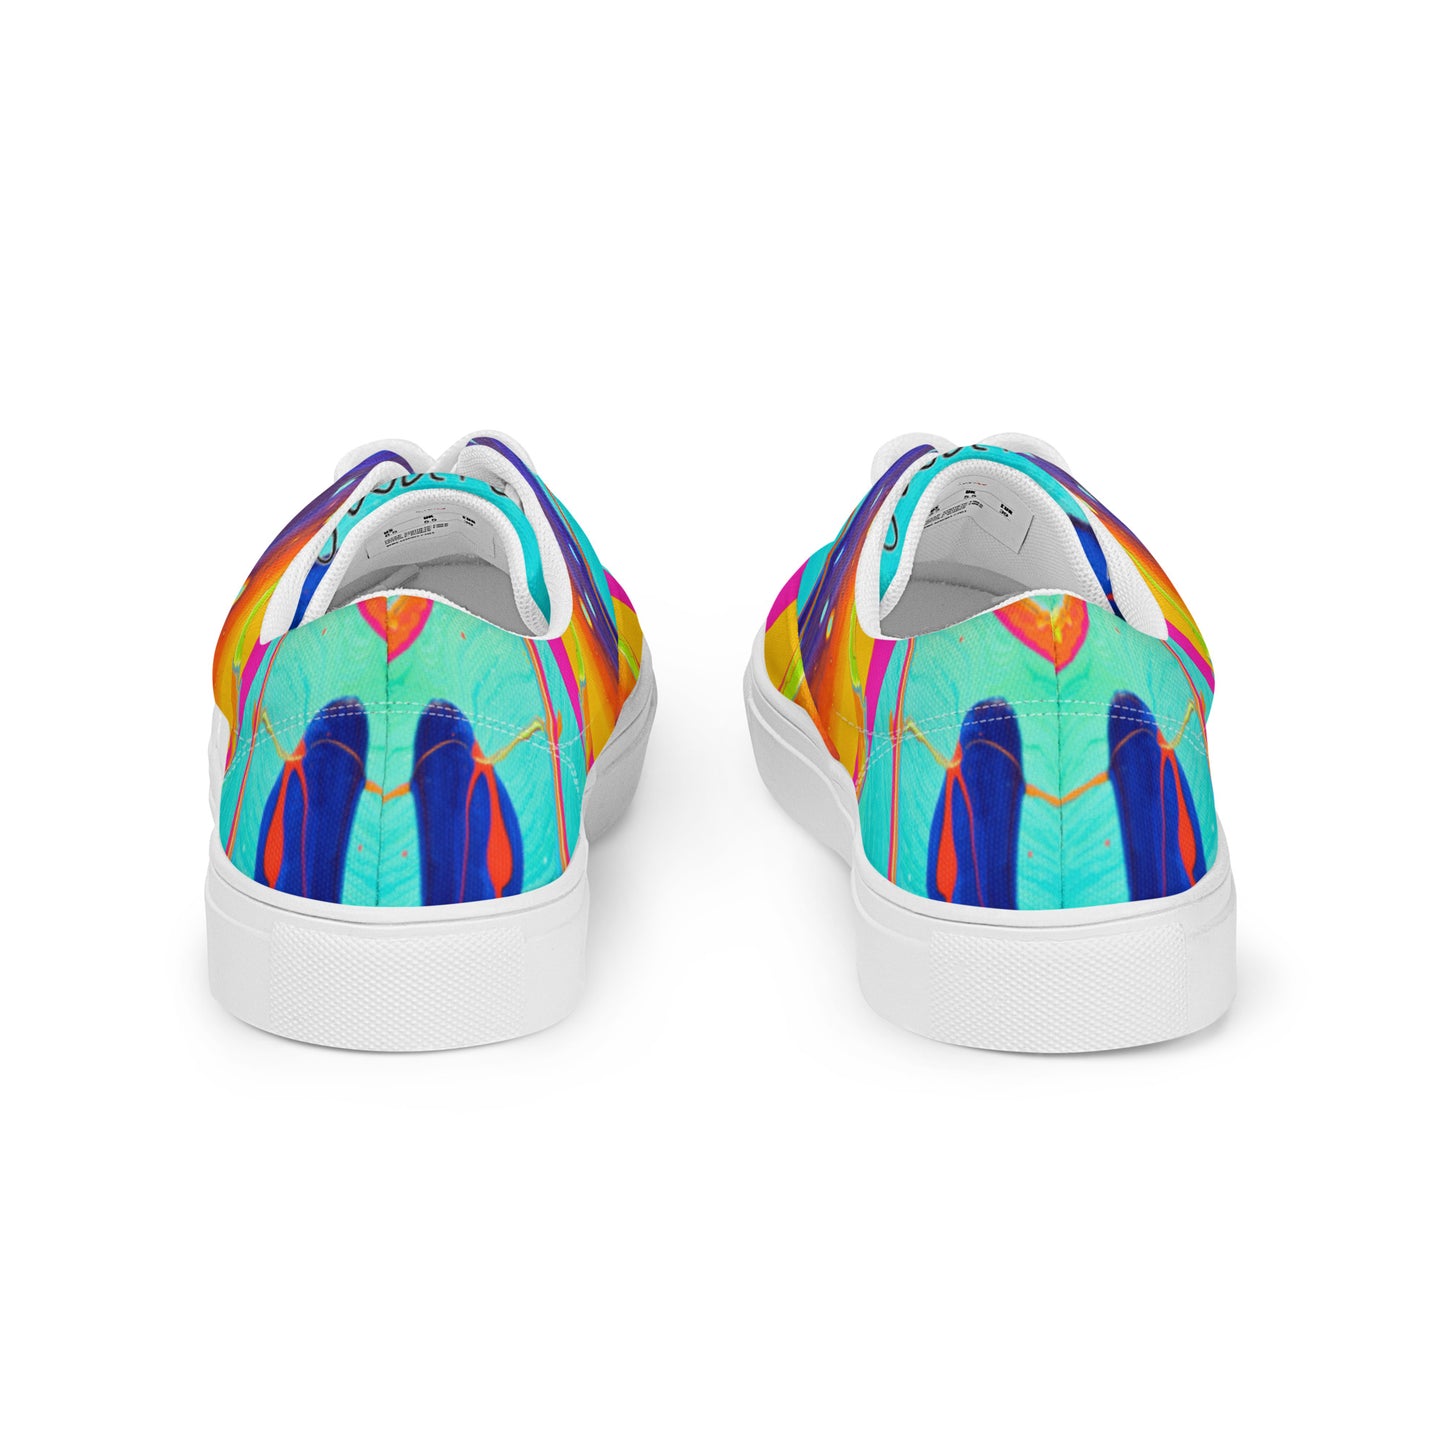 Damen-Schnürschuhe aus Segeltuch – Regenbogen-Design